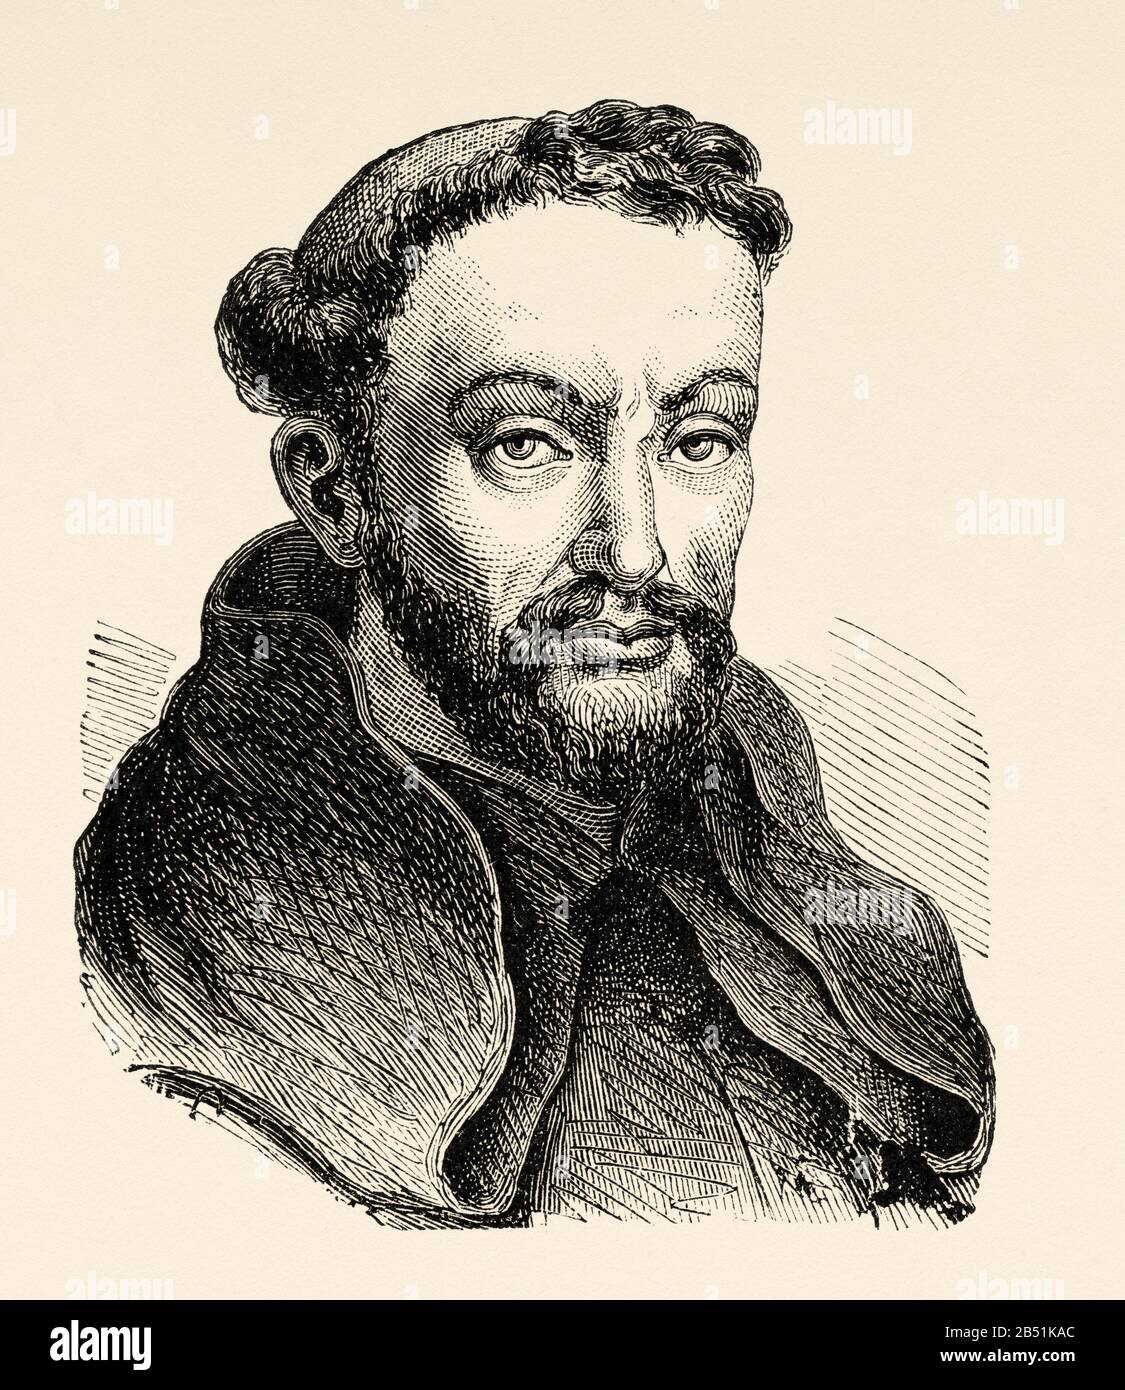 Retrato de Fray Luis de León. Luyssi Legionensis (Belmonte 1527 - Madrigal De Las Altas Torres 1591). Teólogo, poeta, astrónomo, humanista y reli Foto de stock